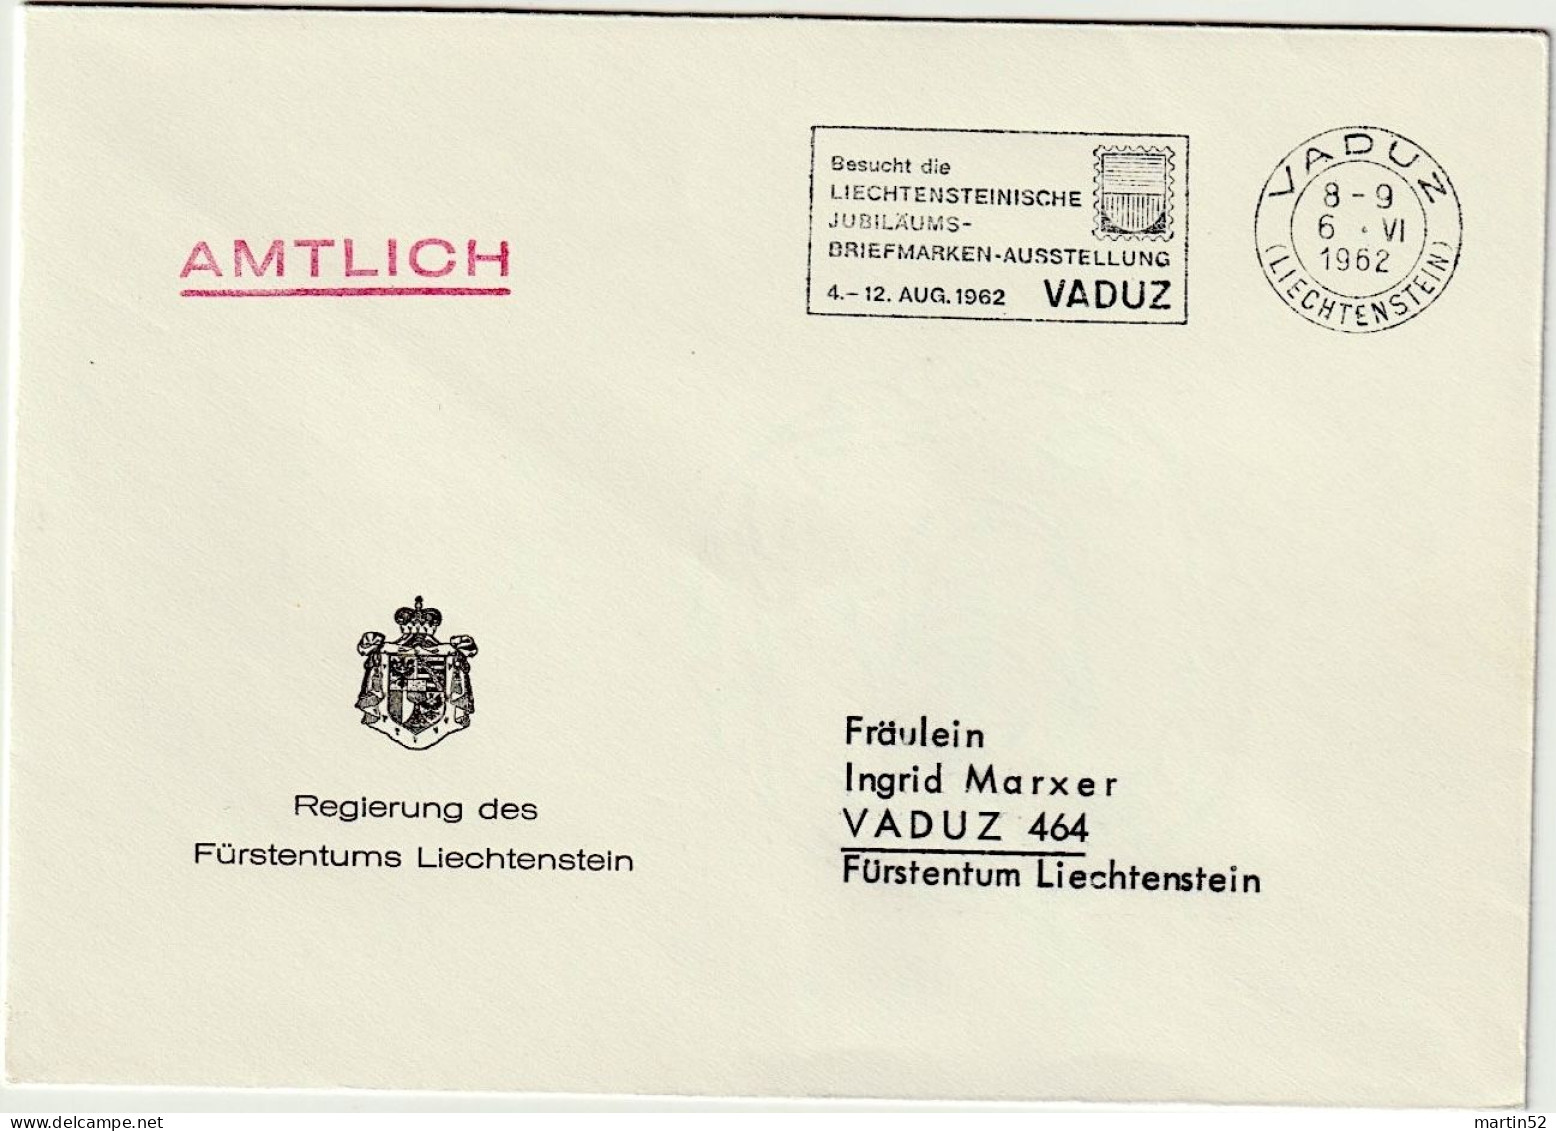 Liechtenstein 1962: Regierung Des F.L. AMTLICH Mit ⊙ VADUZ 6.VI.1962 Besucht Die Jubiläums-Briefmarken-Ausstellung - Dienstmarken